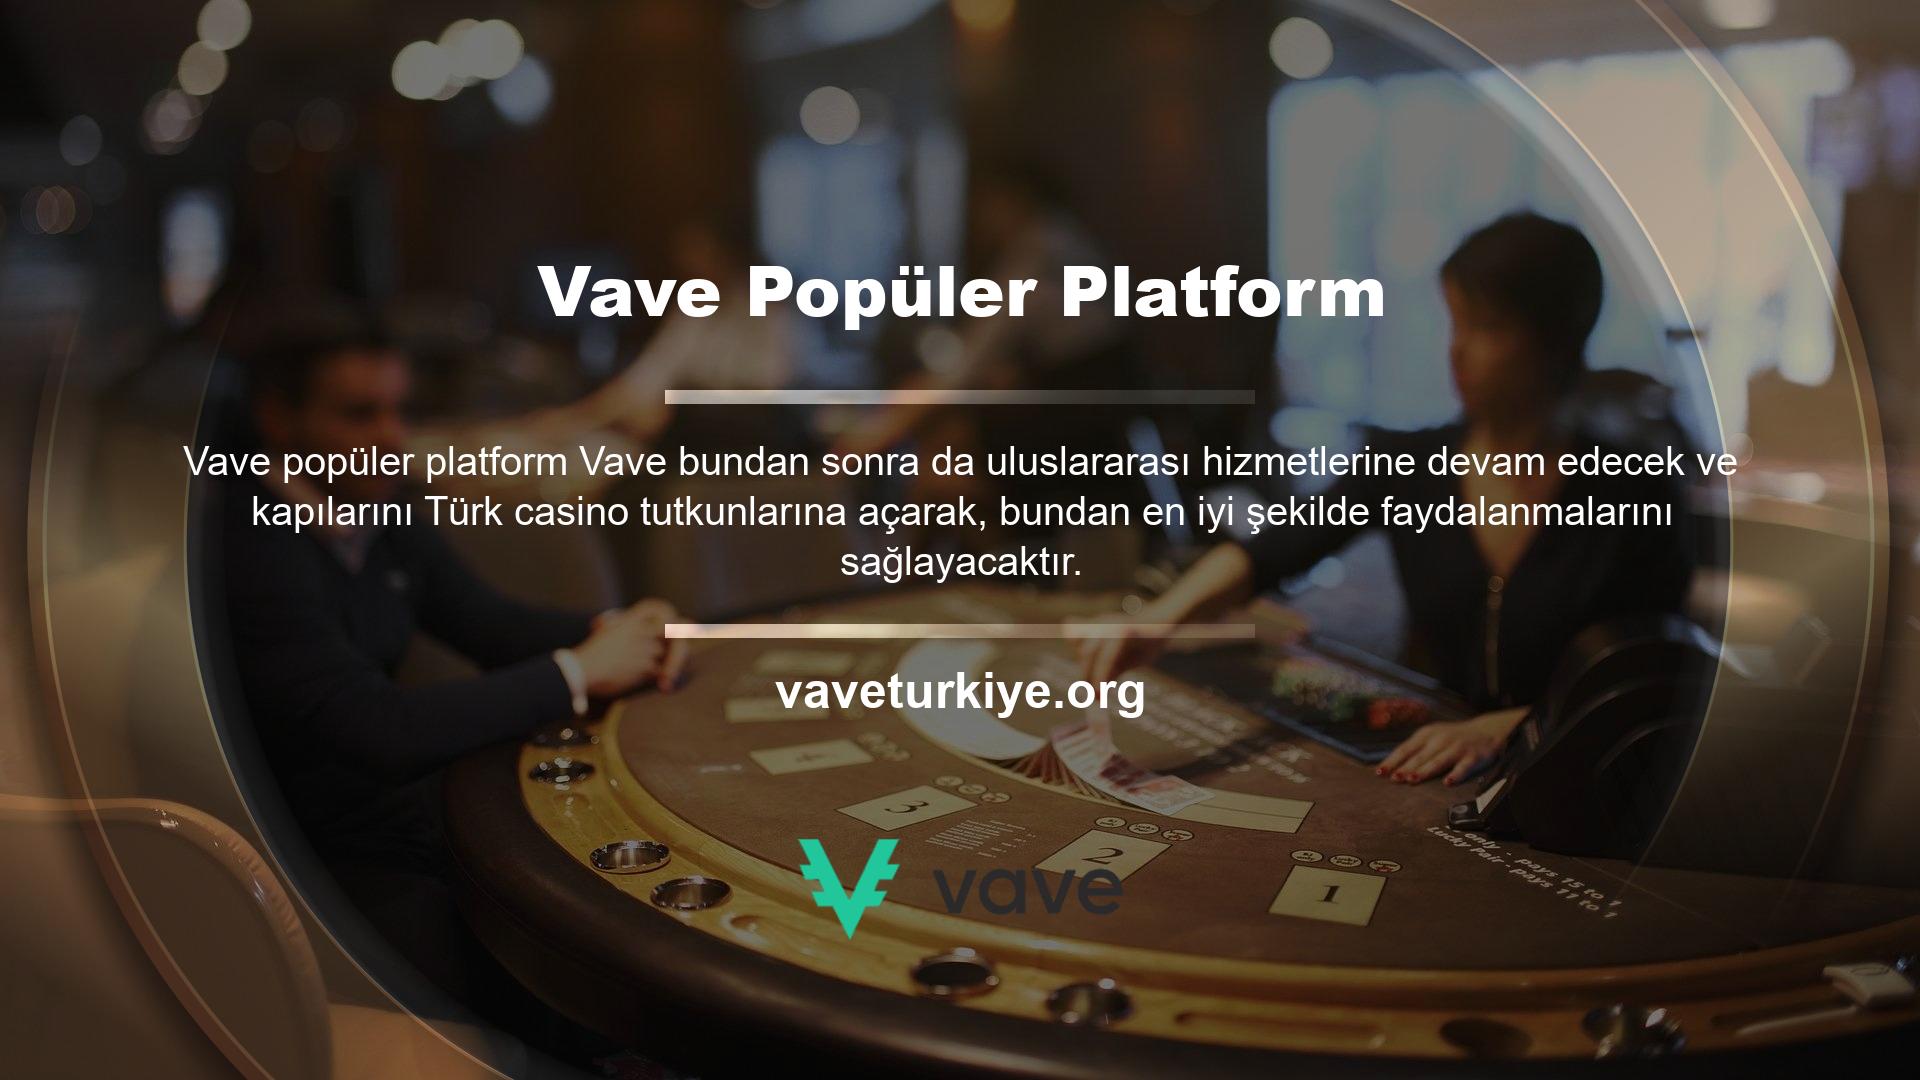 Türkiye'de en çok kullanılan ve popüler platformlardan biridir